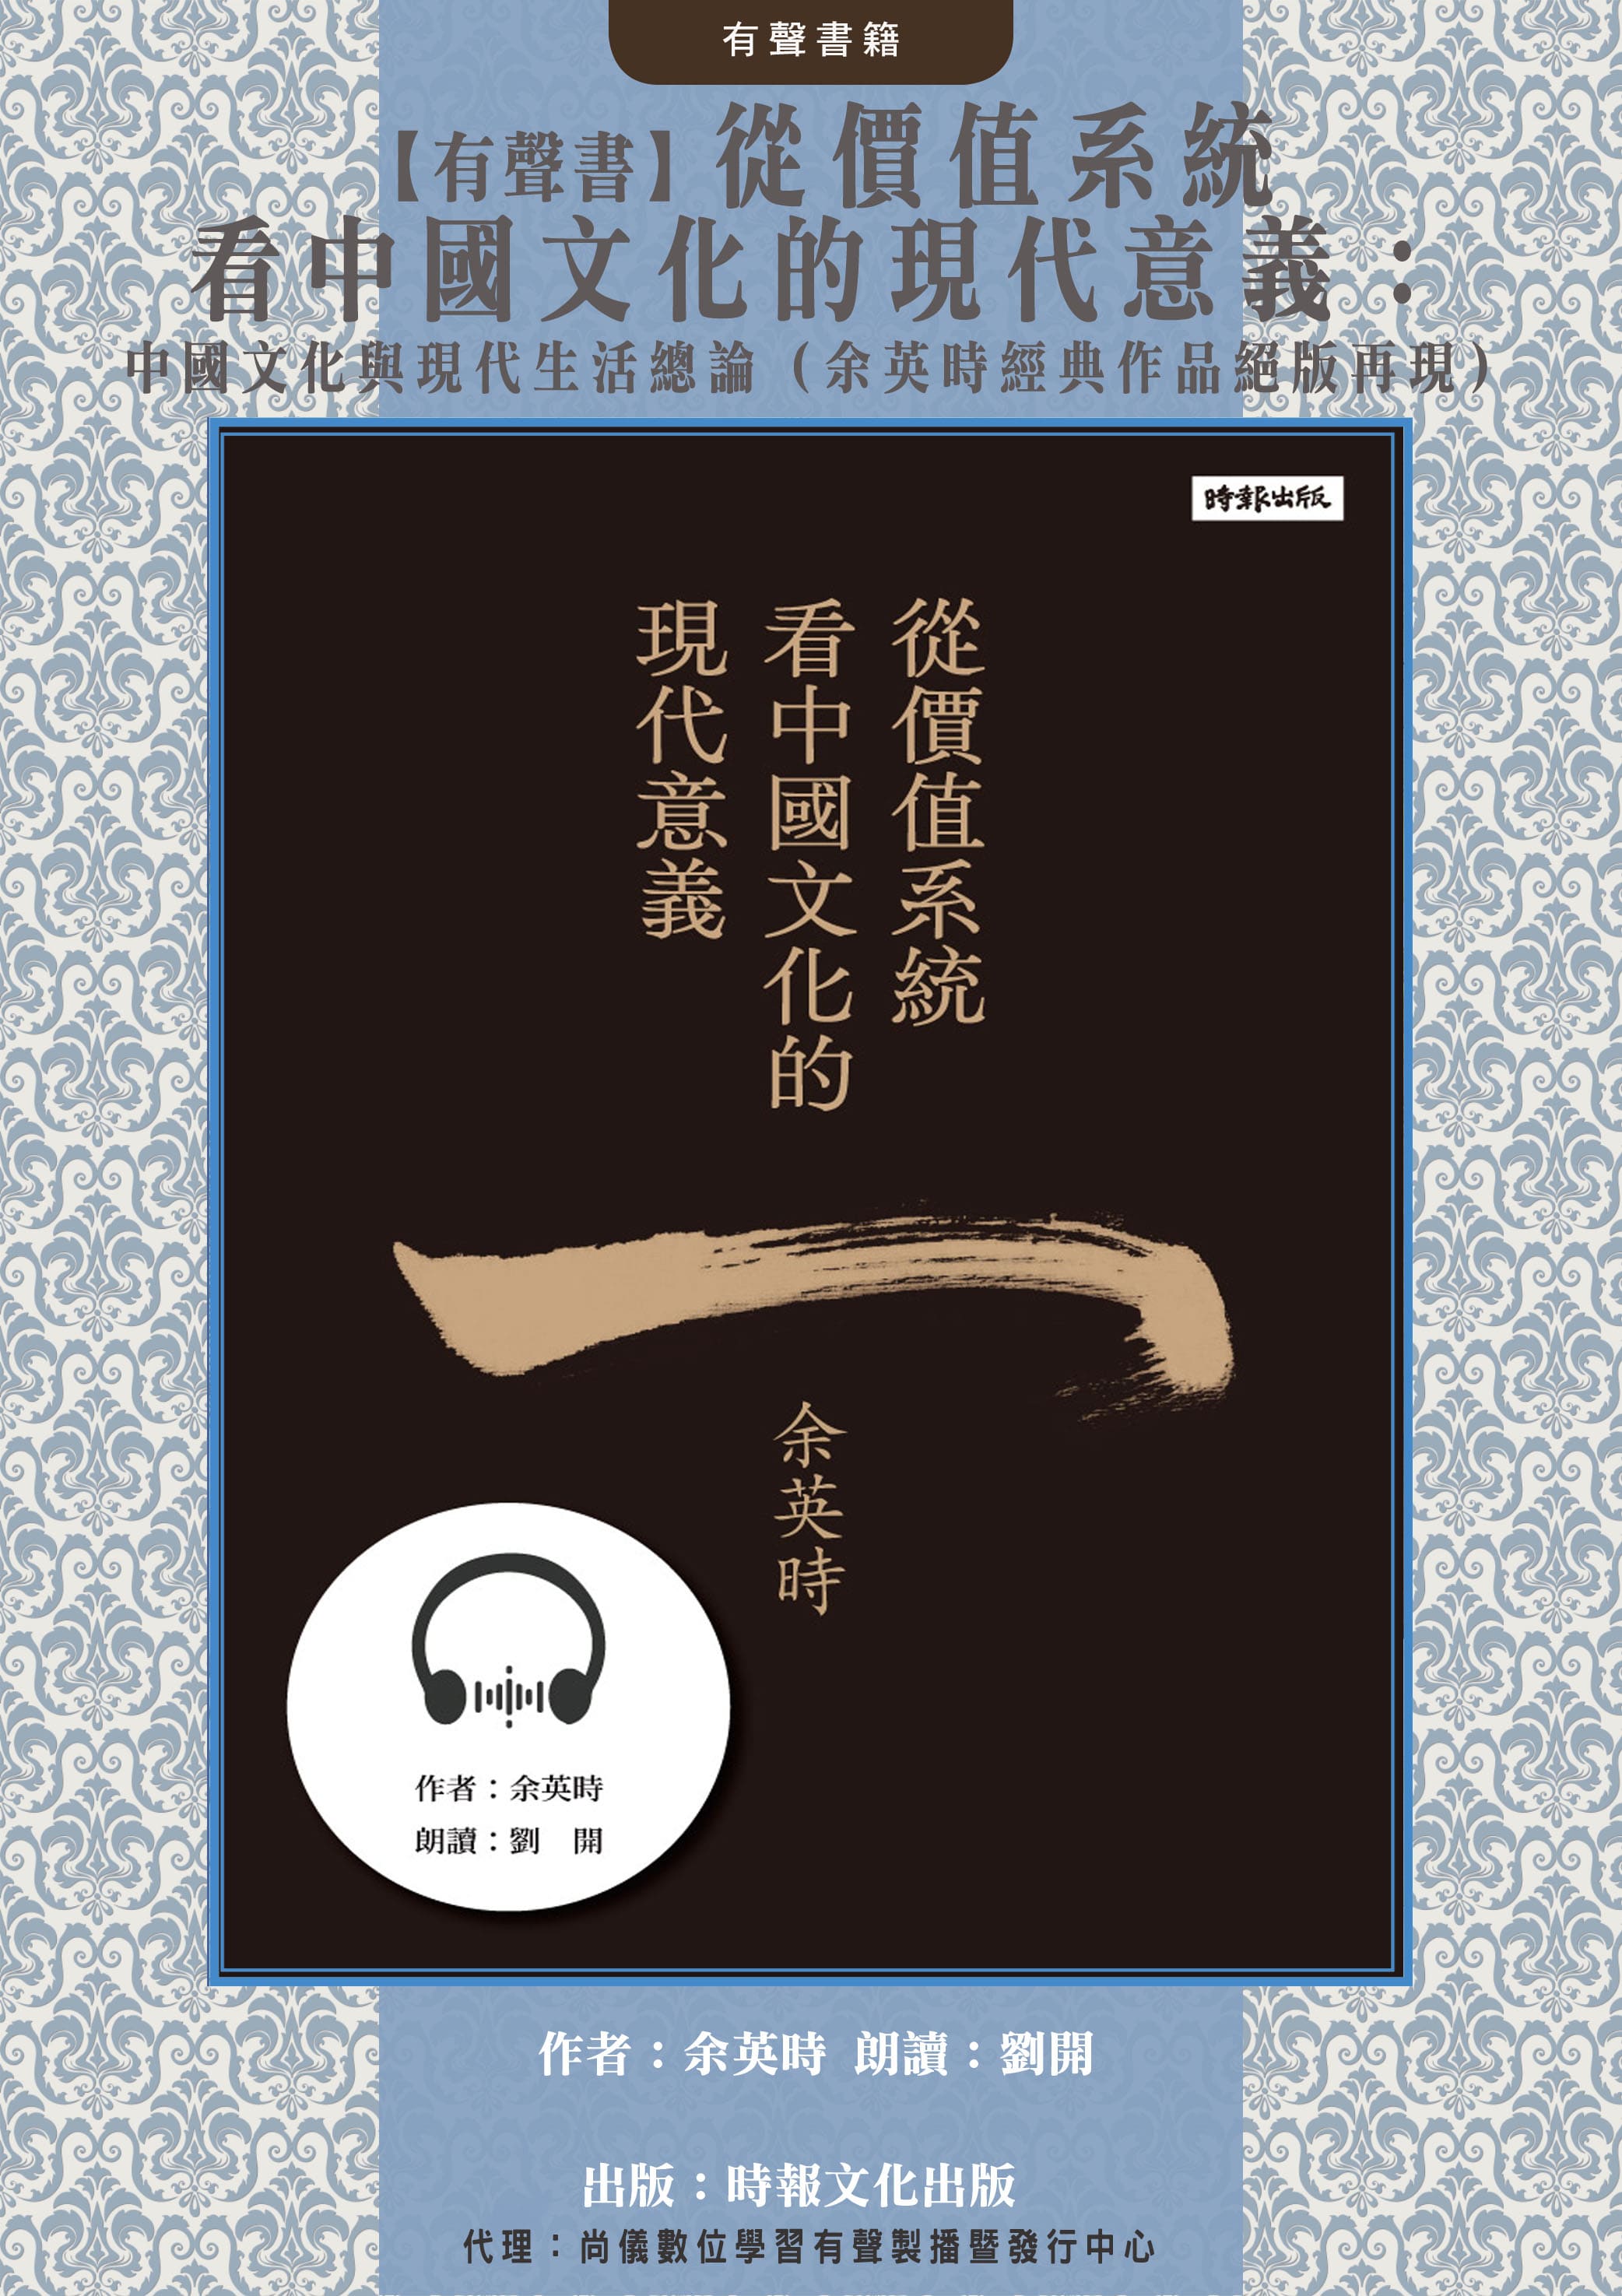 【有聲書】從價值系統看中國文化的現代意義：中國文化與現代生活總論（余英時經典作品絕版再現）封面圖